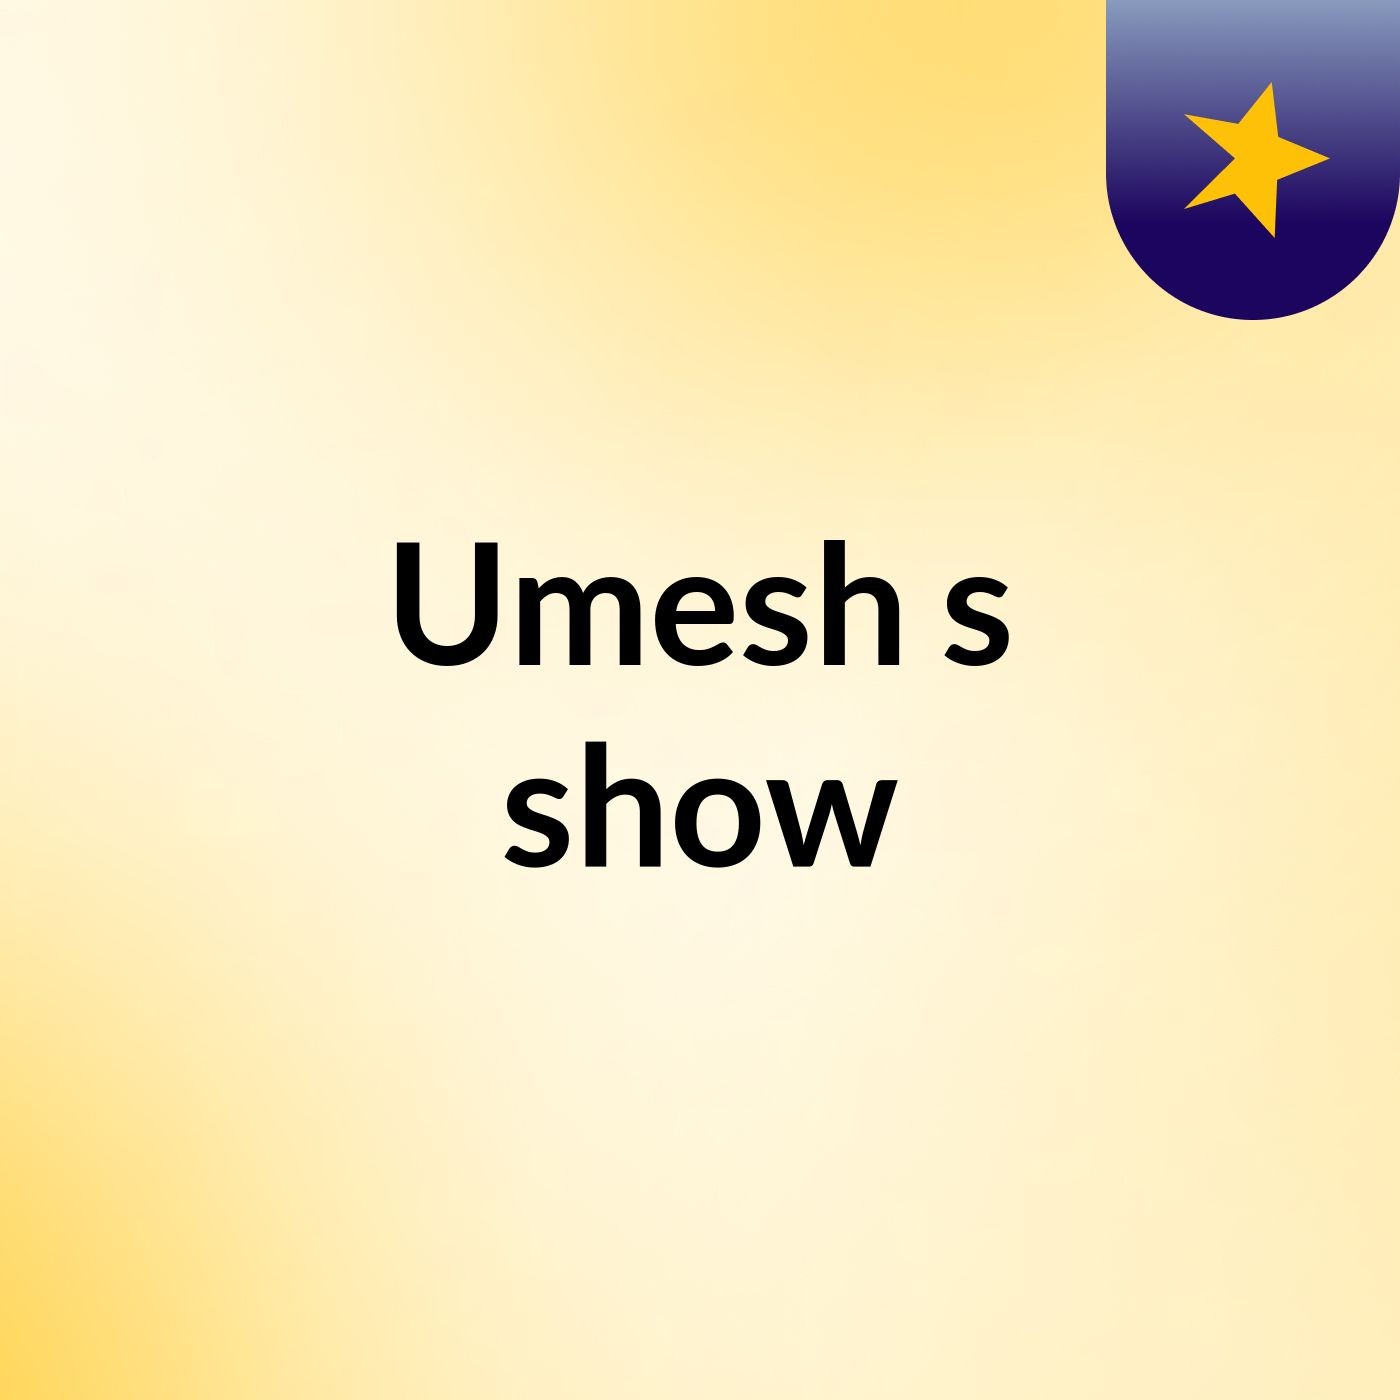 Umesh's show